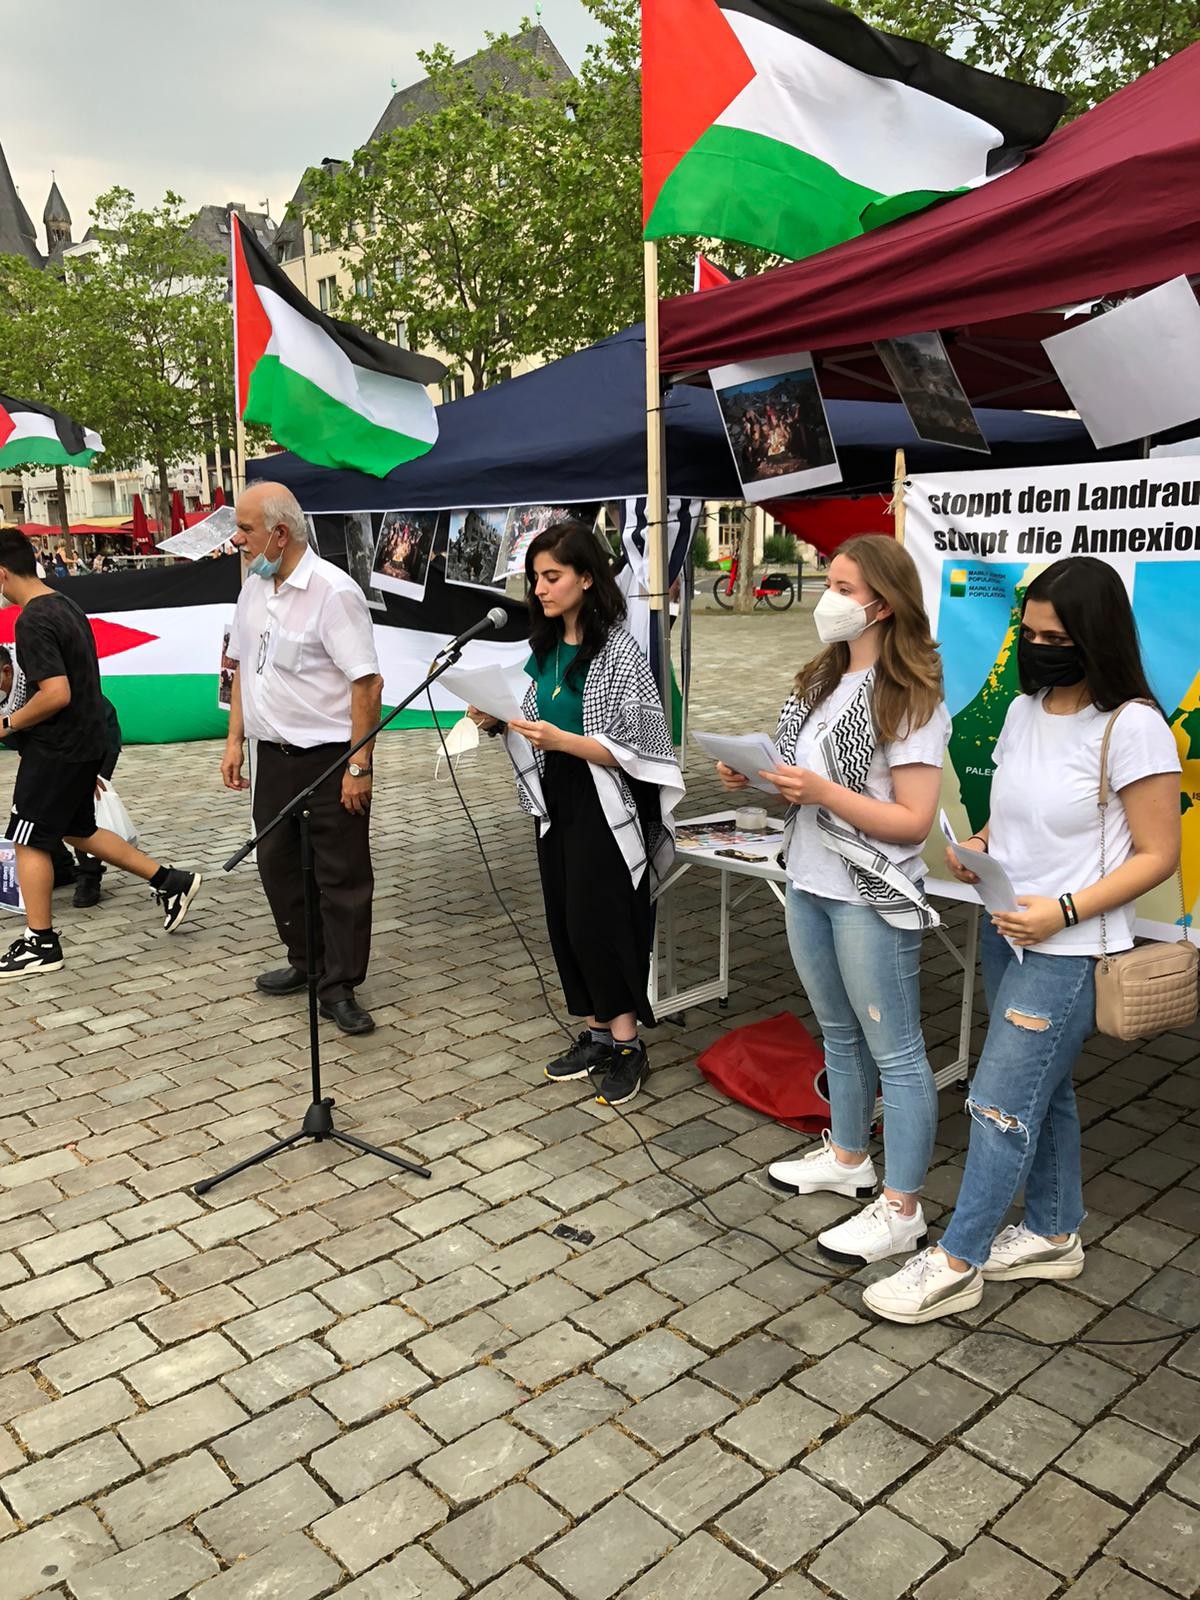 الائتلاف الفلسطيني في غرب المانيا ينظم وقفة جماهيرية للتذكير بالـ(٦٧) طفلًا الذين استشهدوا في الحرب الأخيرة التي شنت على قطاع غزة4